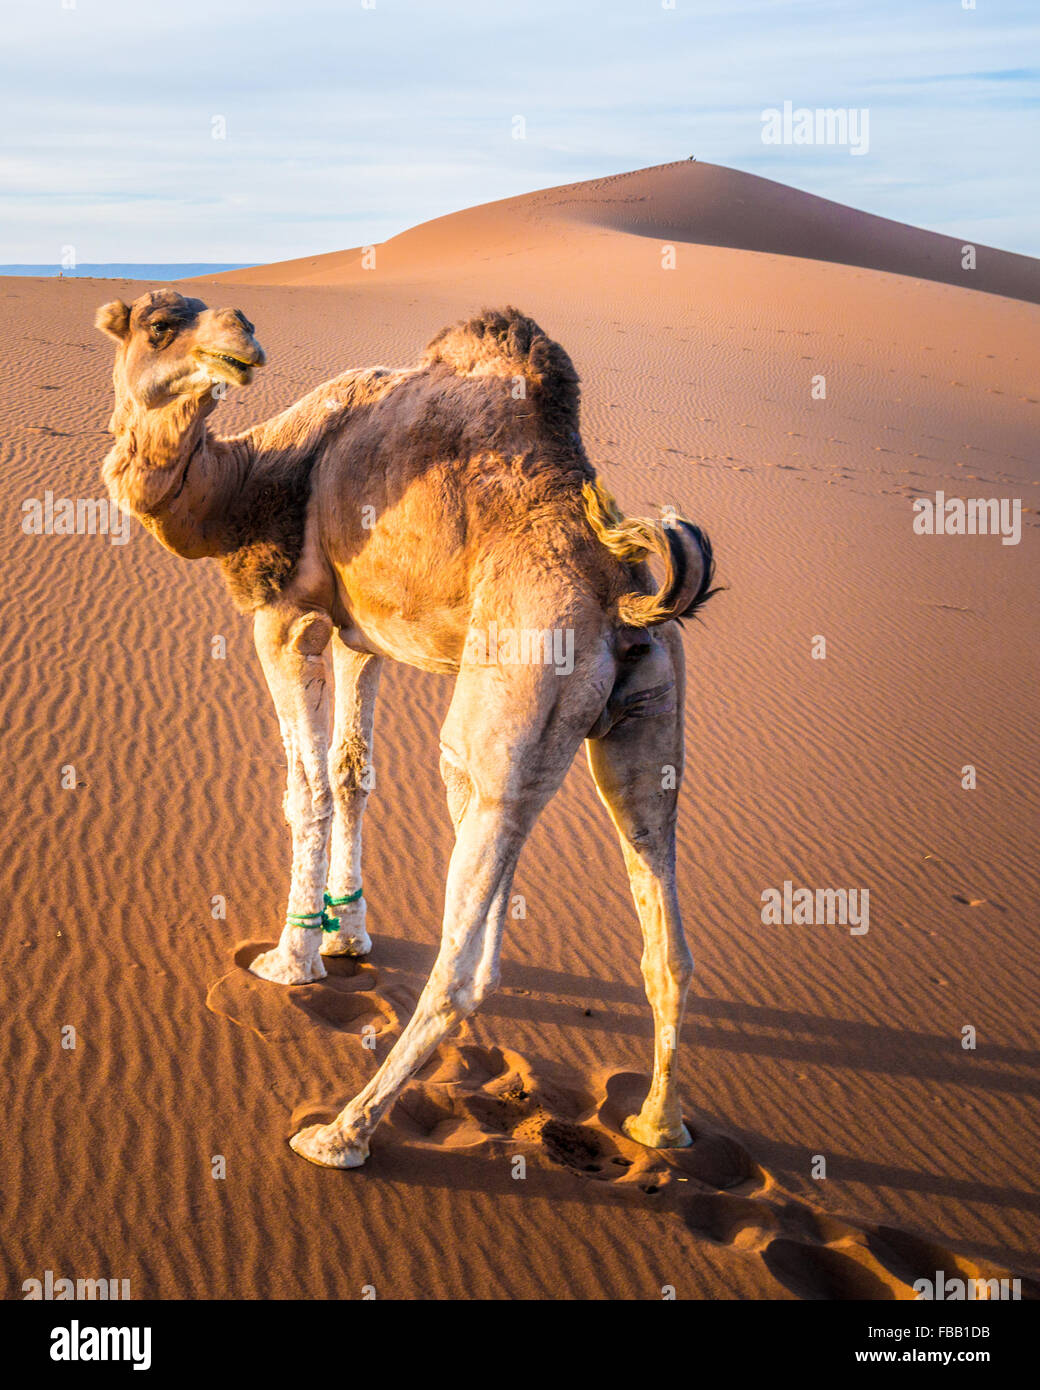 Fiesty camel, Erg Chegaga Morocco Stock Photo